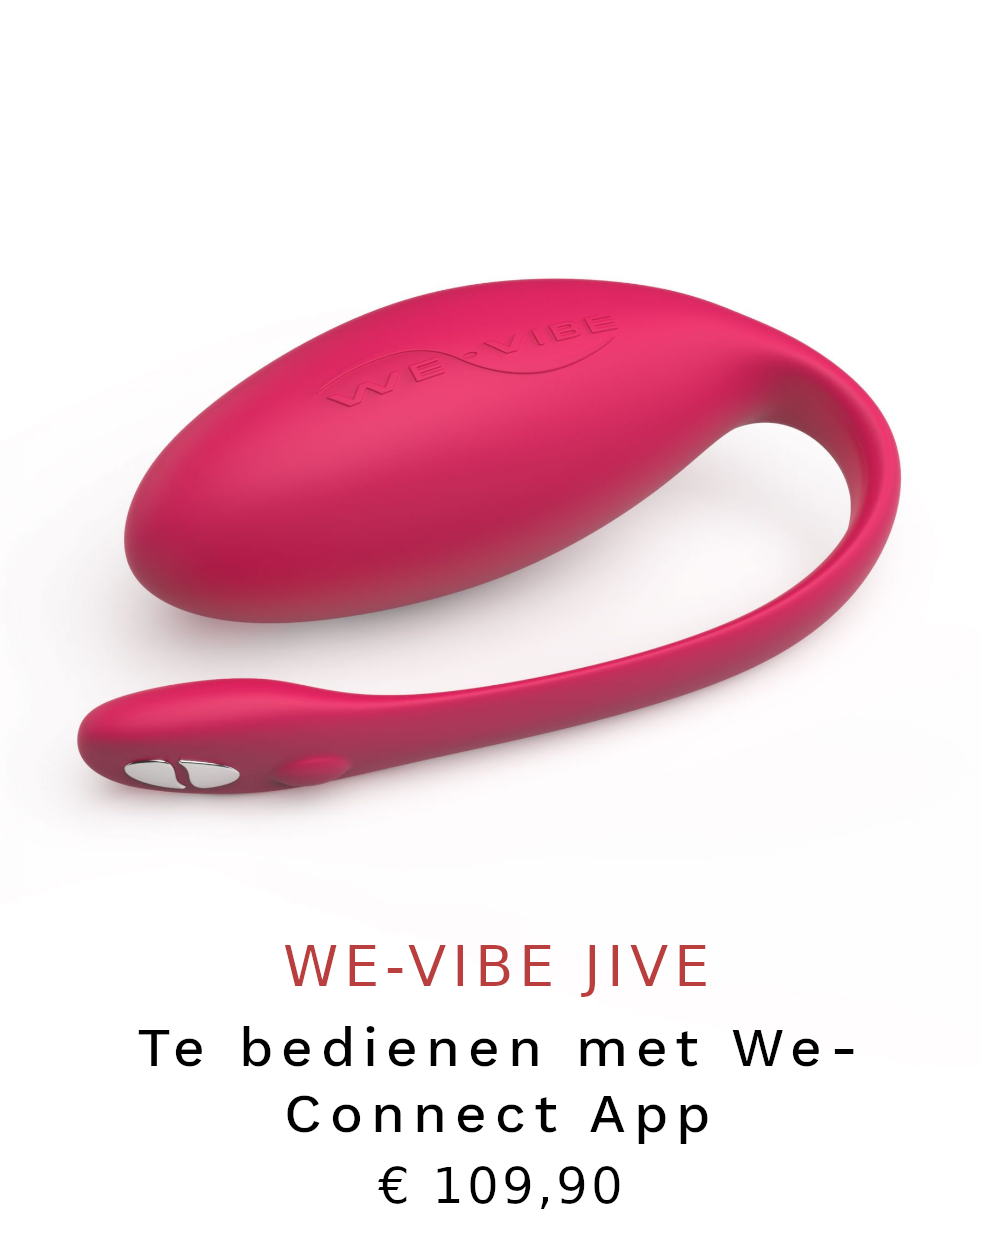 We-Vibe Jive